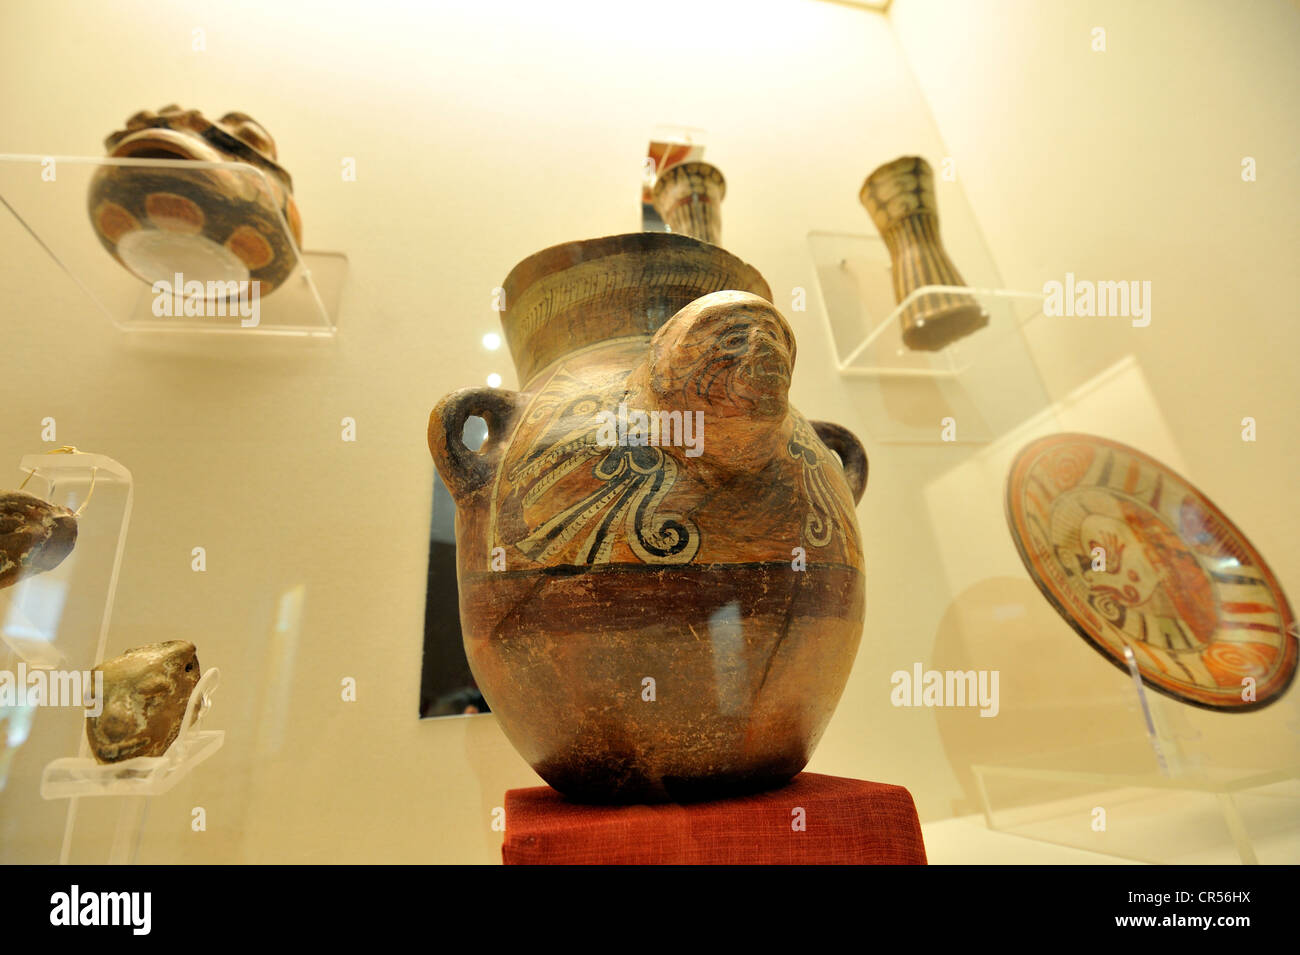 Vorspanische Keramik im Museum der Ausgrabungsstätte von der Pyramide von Cholula, Mexiko, Lateinamerika, Nordamerika Stockfoto